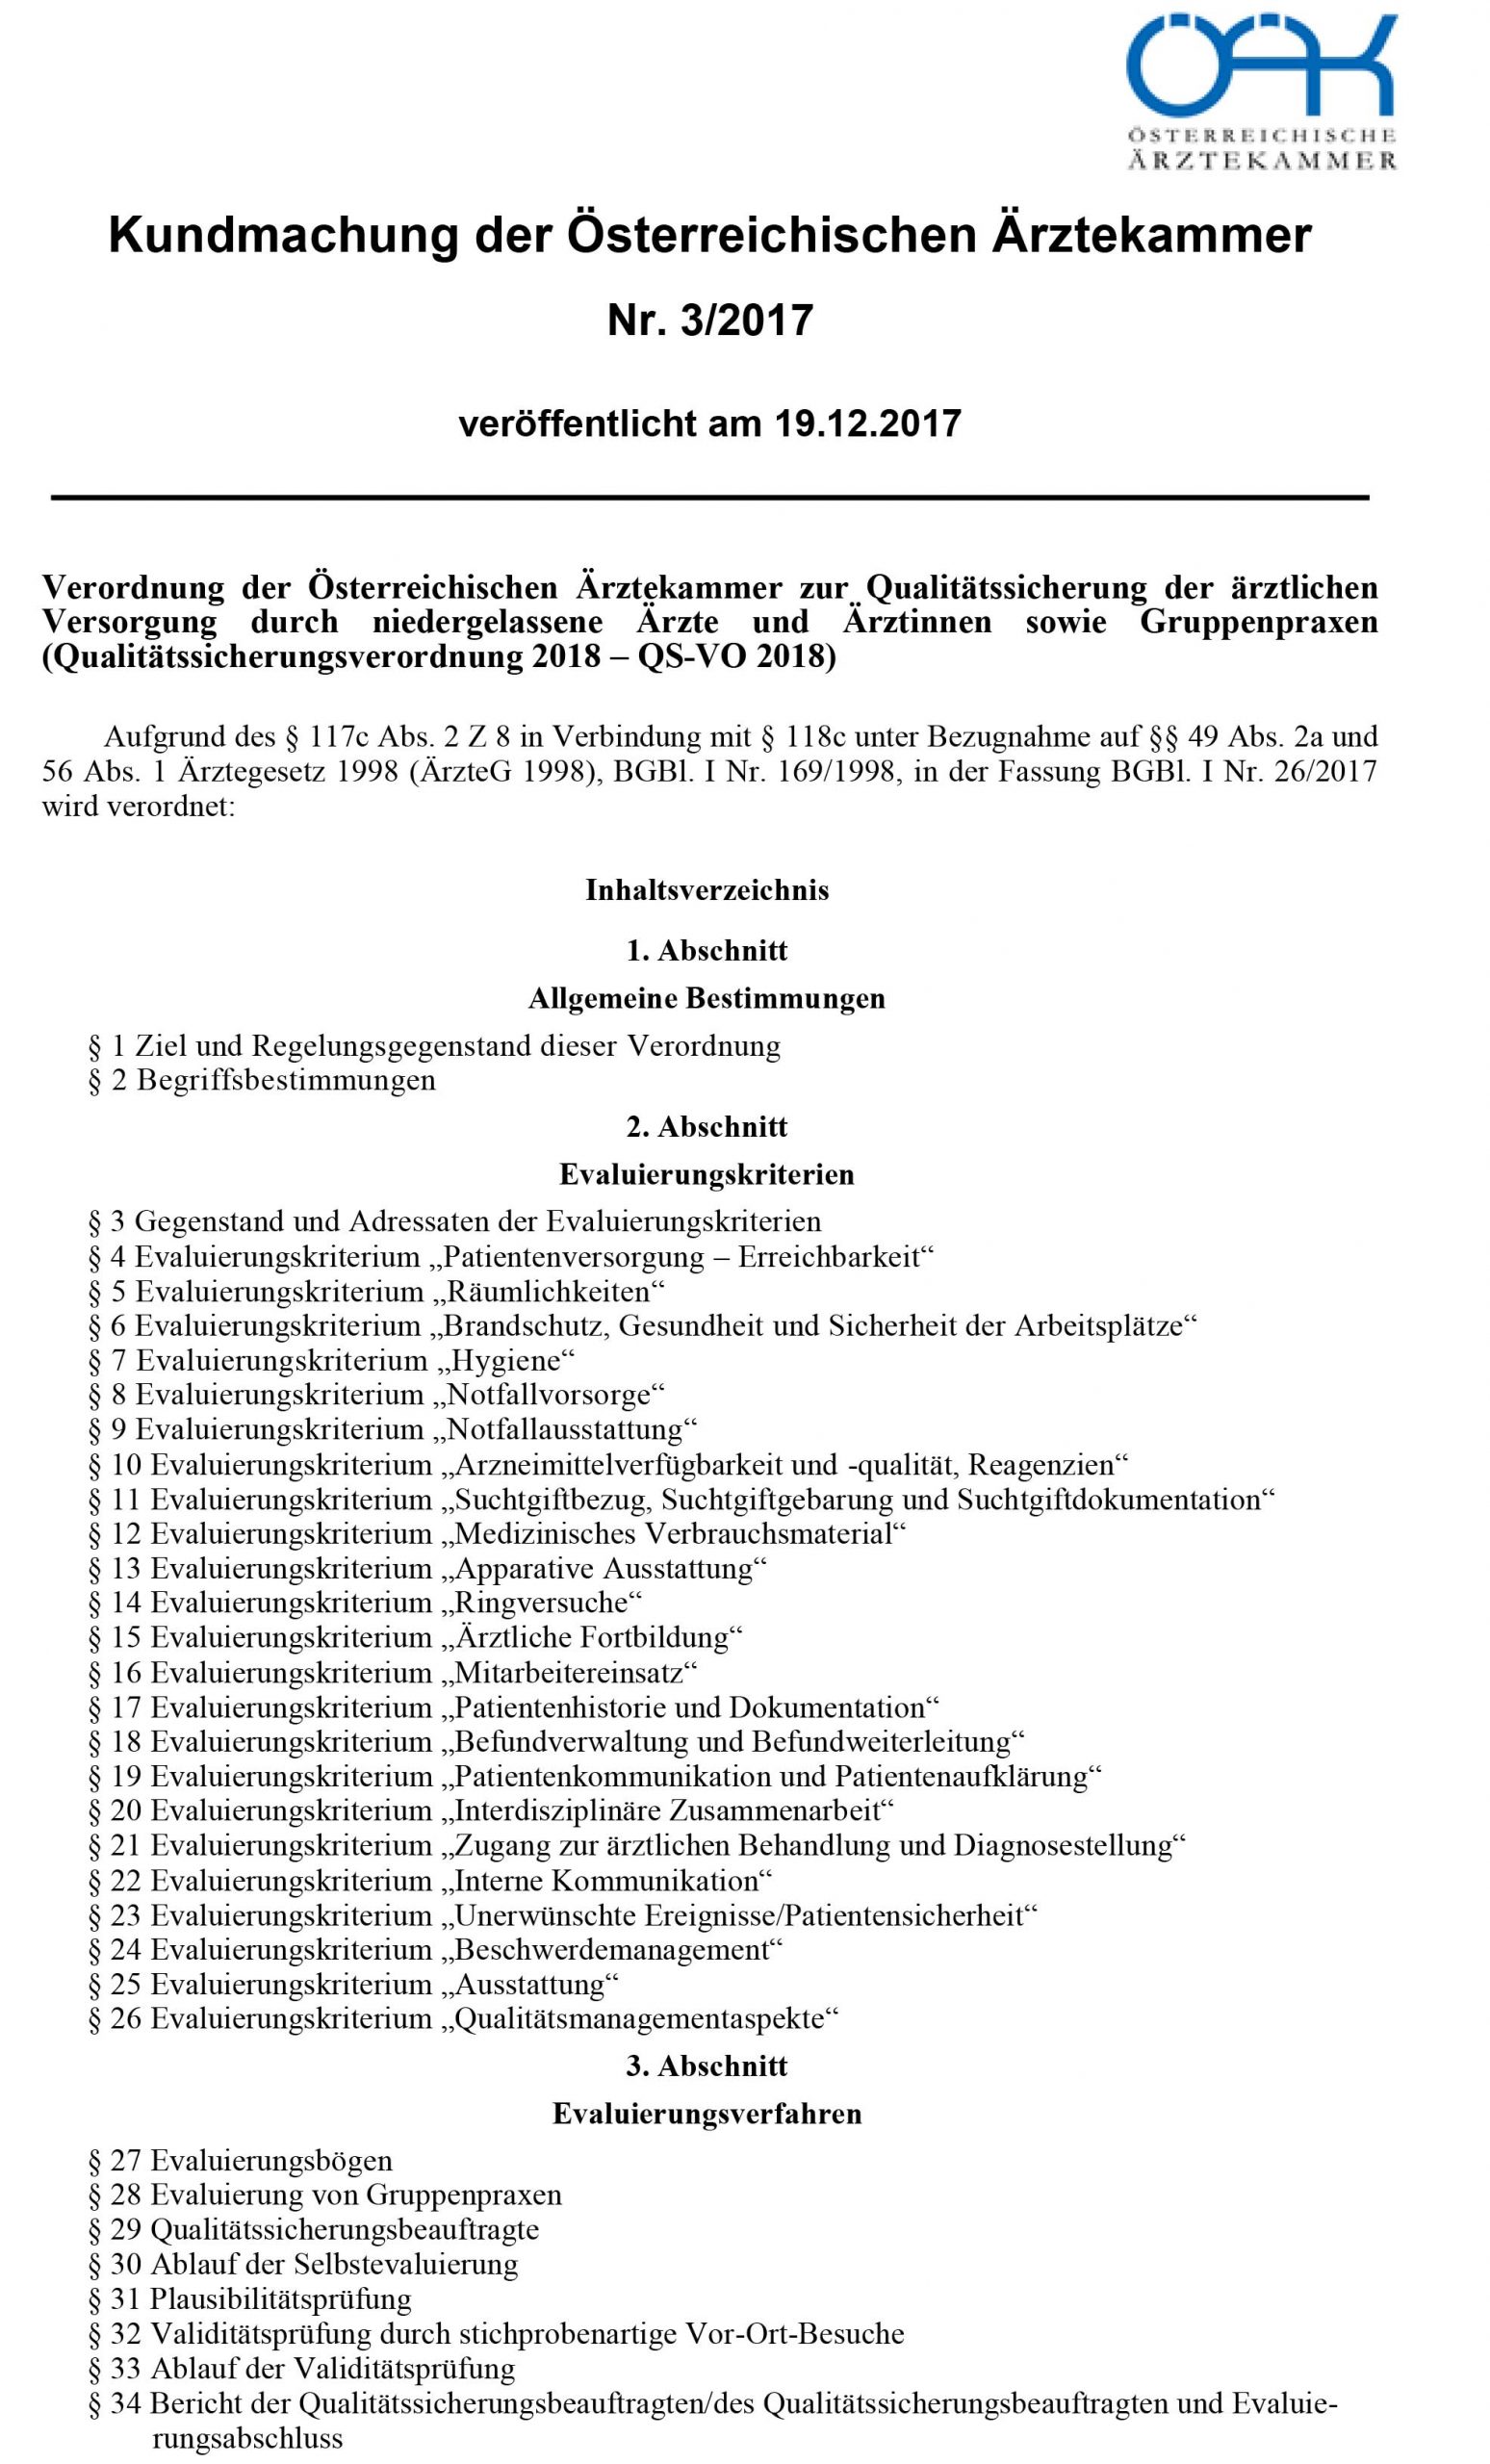 Ordinationshandbuch - A4 Qualitaetssicherungsverordnung